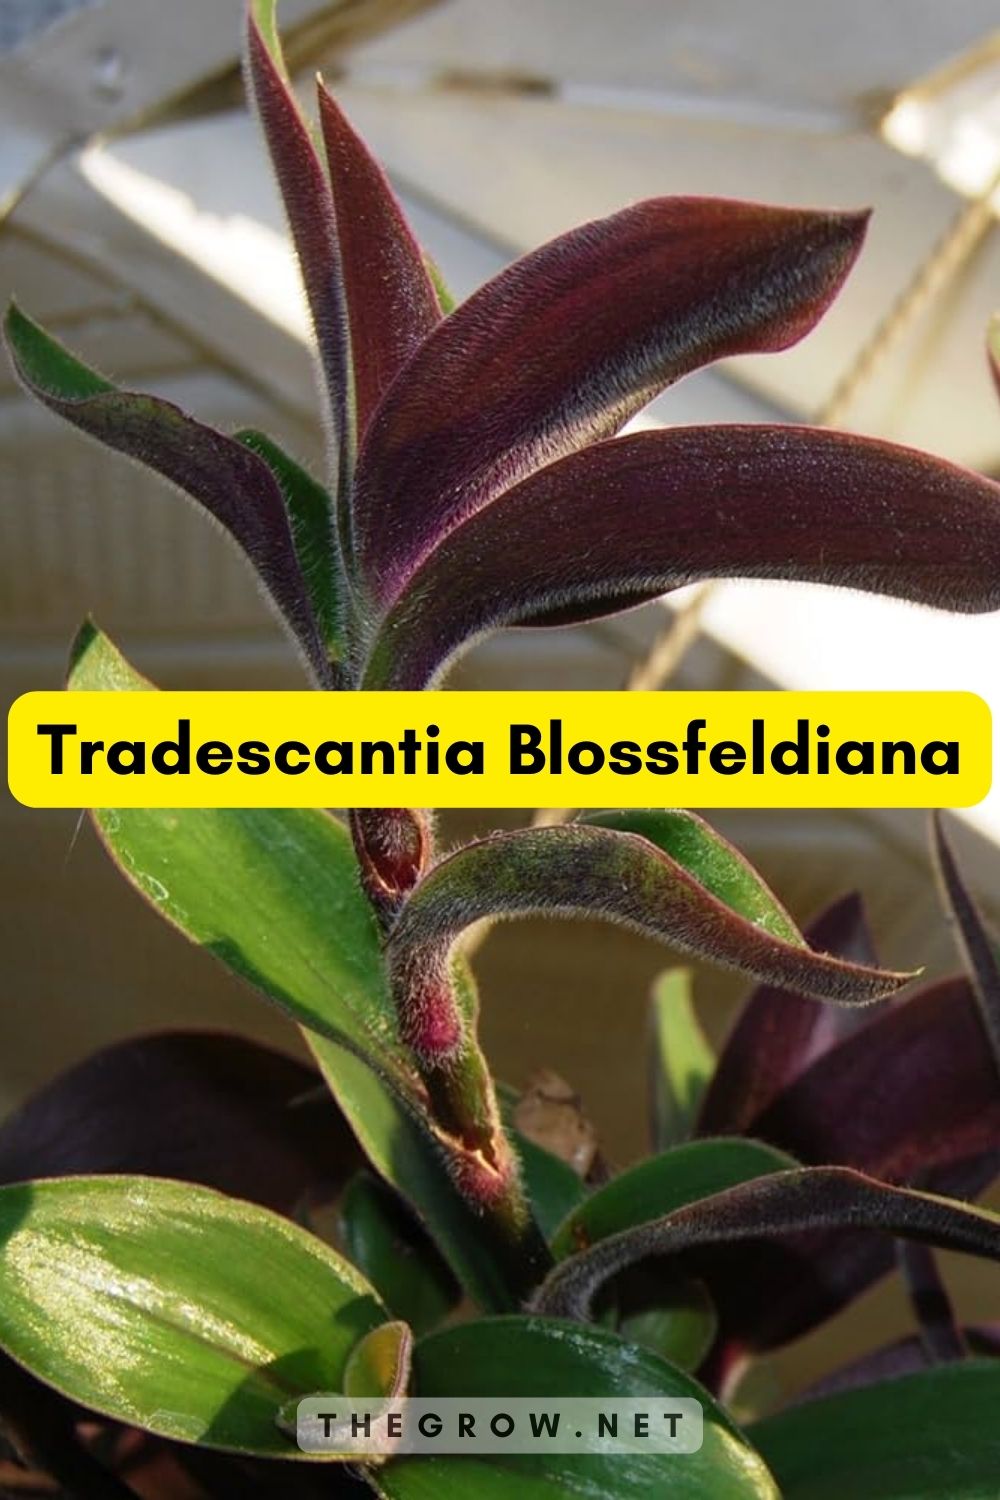 Tradescantia Blossfeldiana